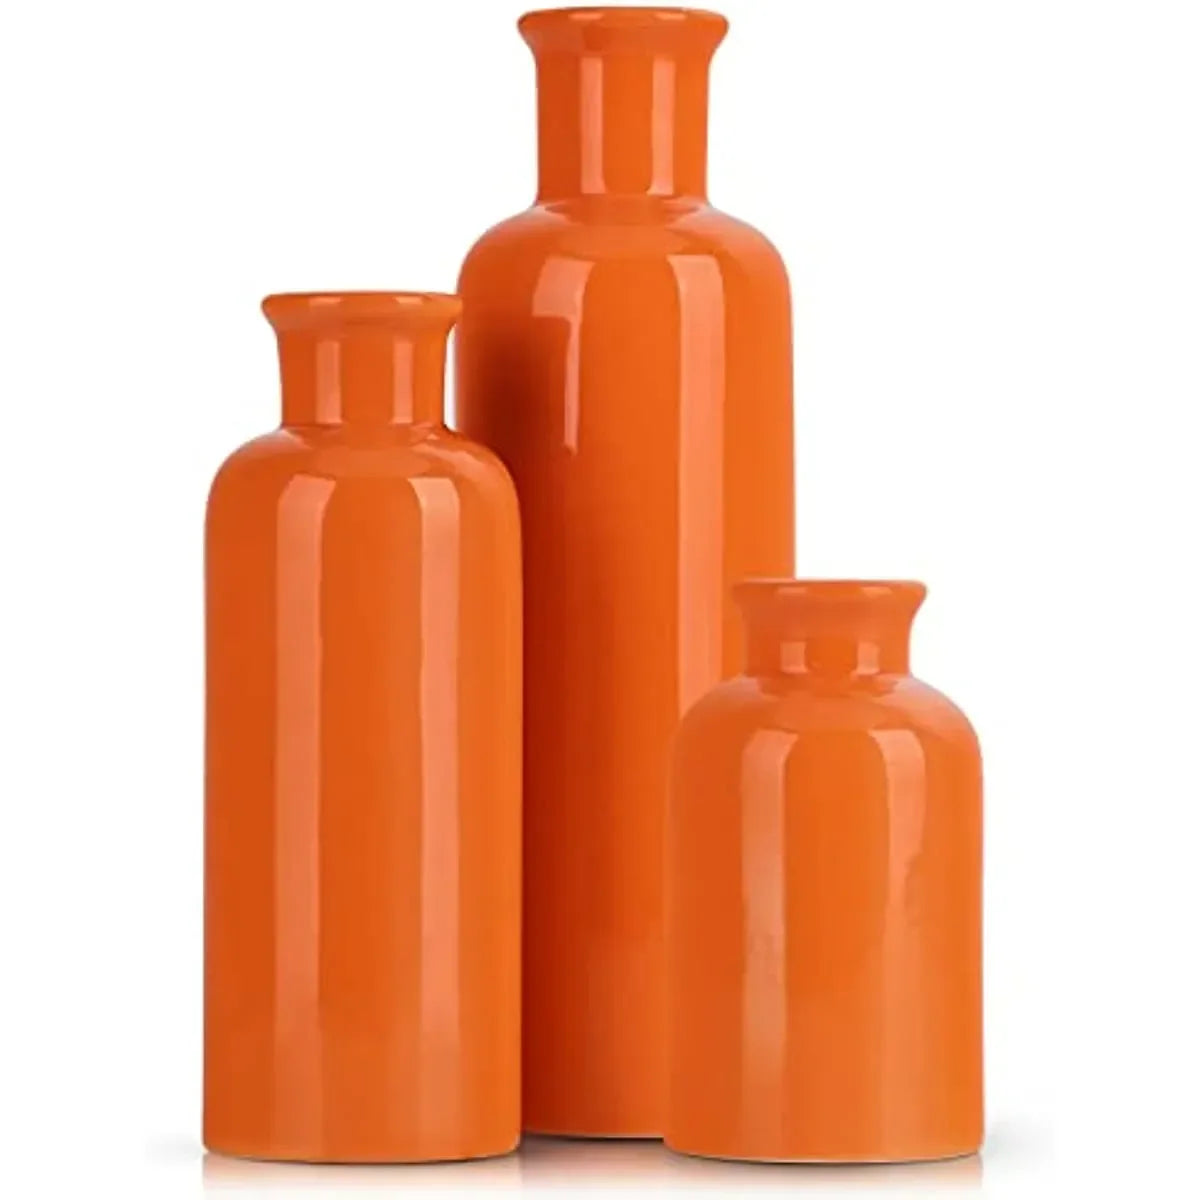 Oranje keramische vaas ingesteld voor 3 modern minimalistisch decor Boho vazen ​​boerderij huisinrichting accenten woonkamer centerpieces